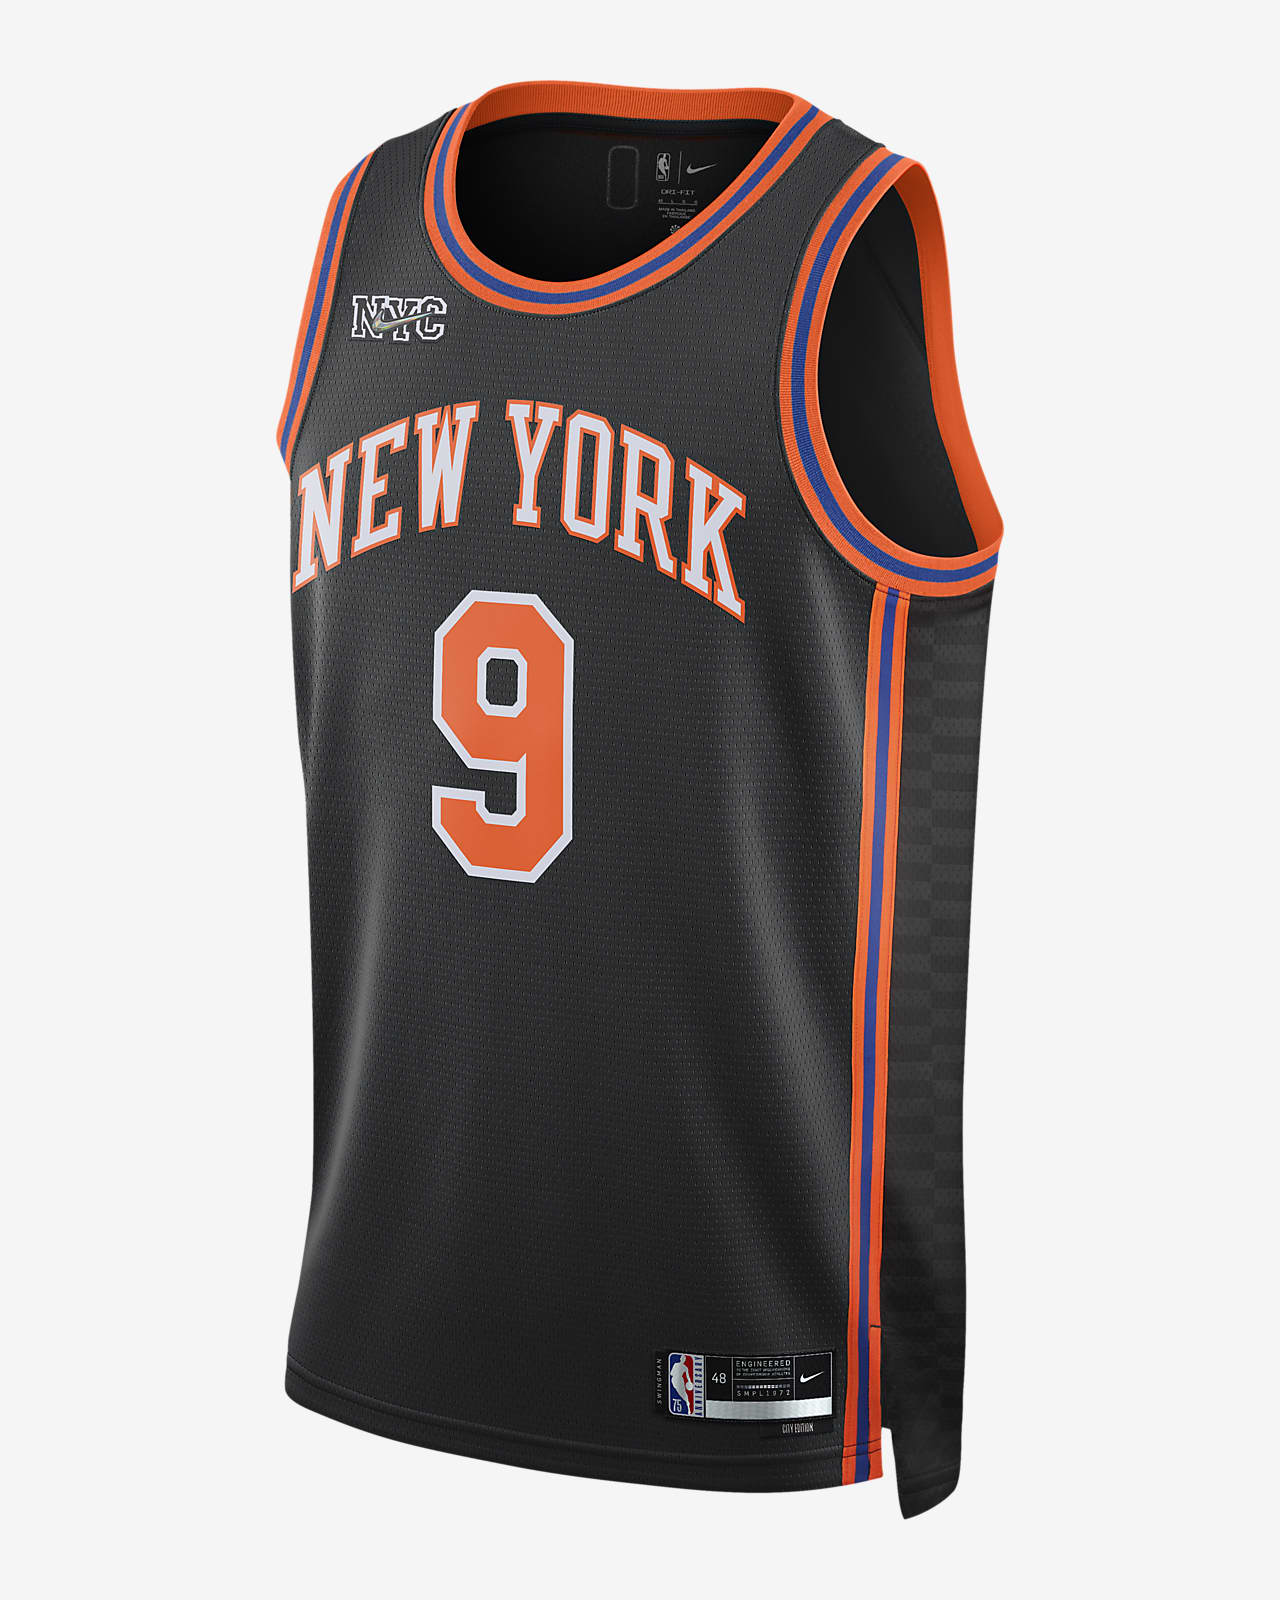 Jersey New York Knicks Sale Online, SAVE 41% 